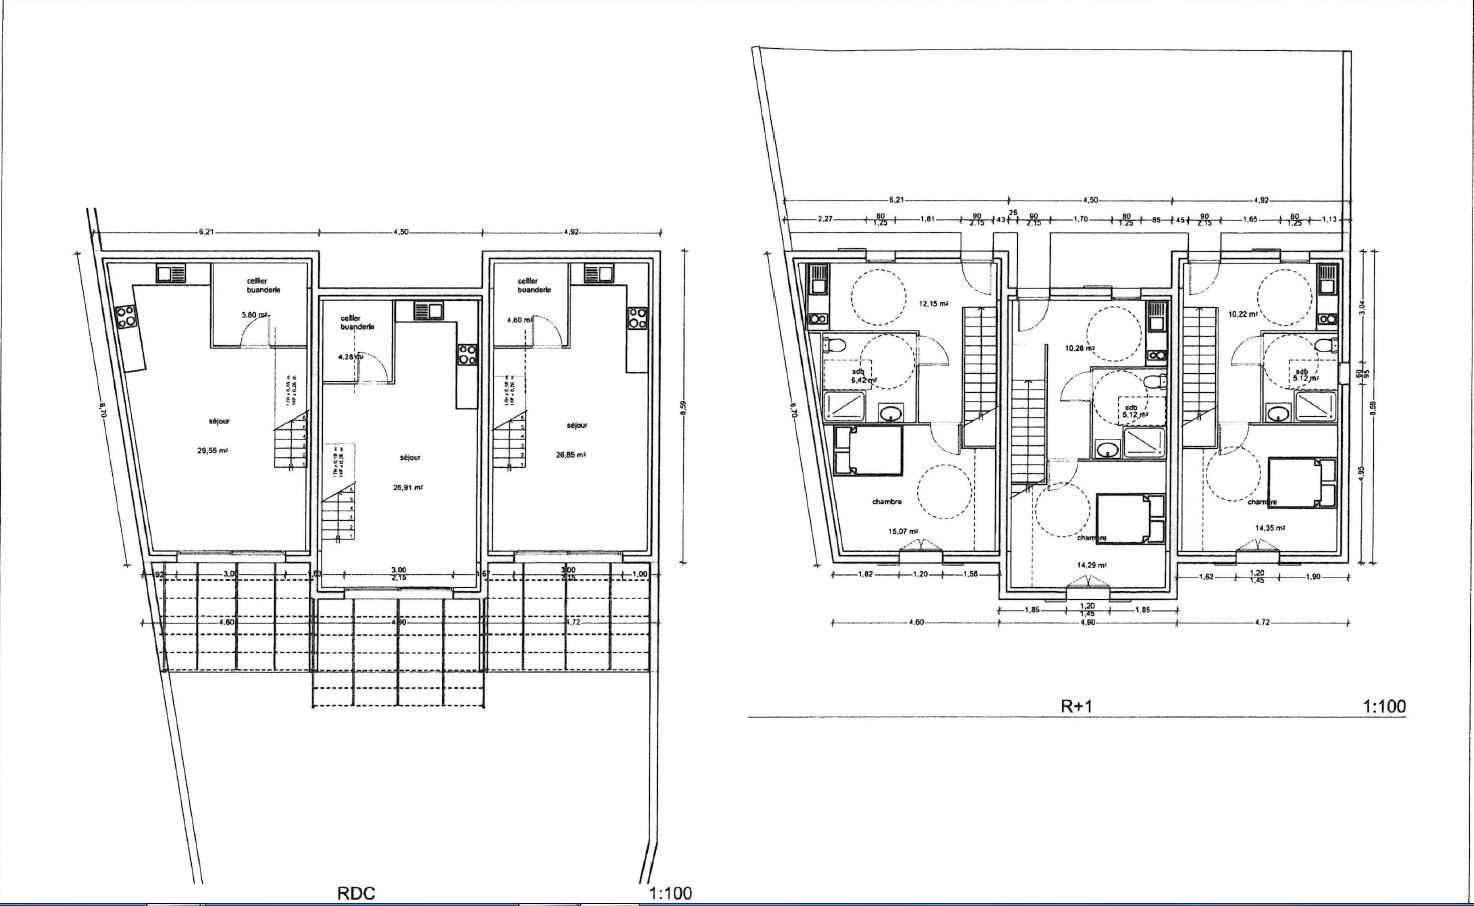 EN EXCLUSIVITE ! A CADENET  Maison T2 EN VEFA 61 m² sur 267 m² de terrain